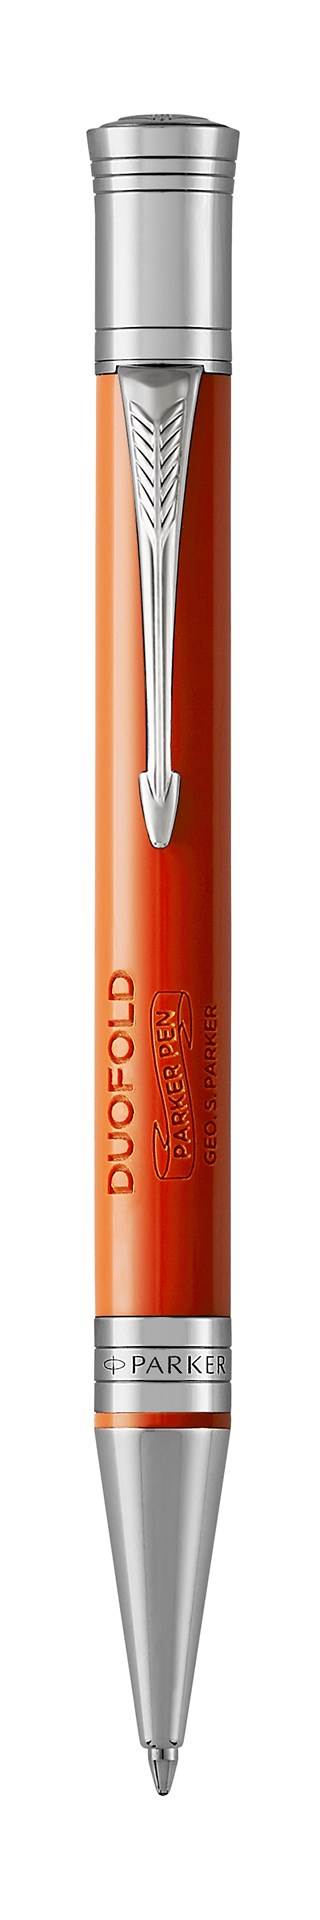 Parker Duofold długopis | Classic Big Red Vintage |medium | czarny wkład | opakowanie prezentowe premium